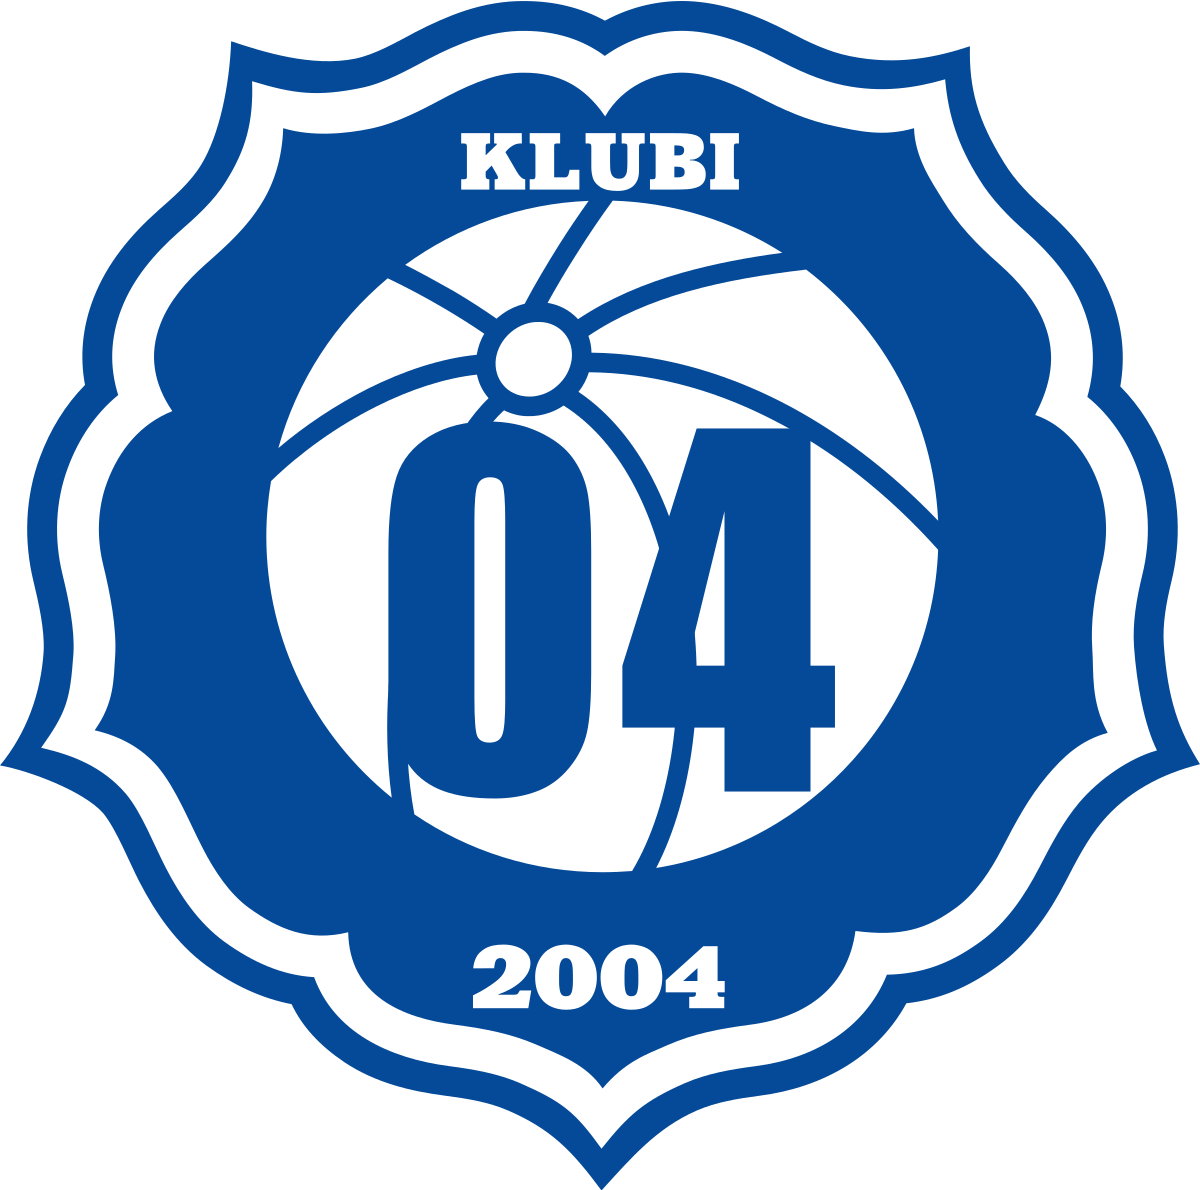 Klubi 04 - Logo